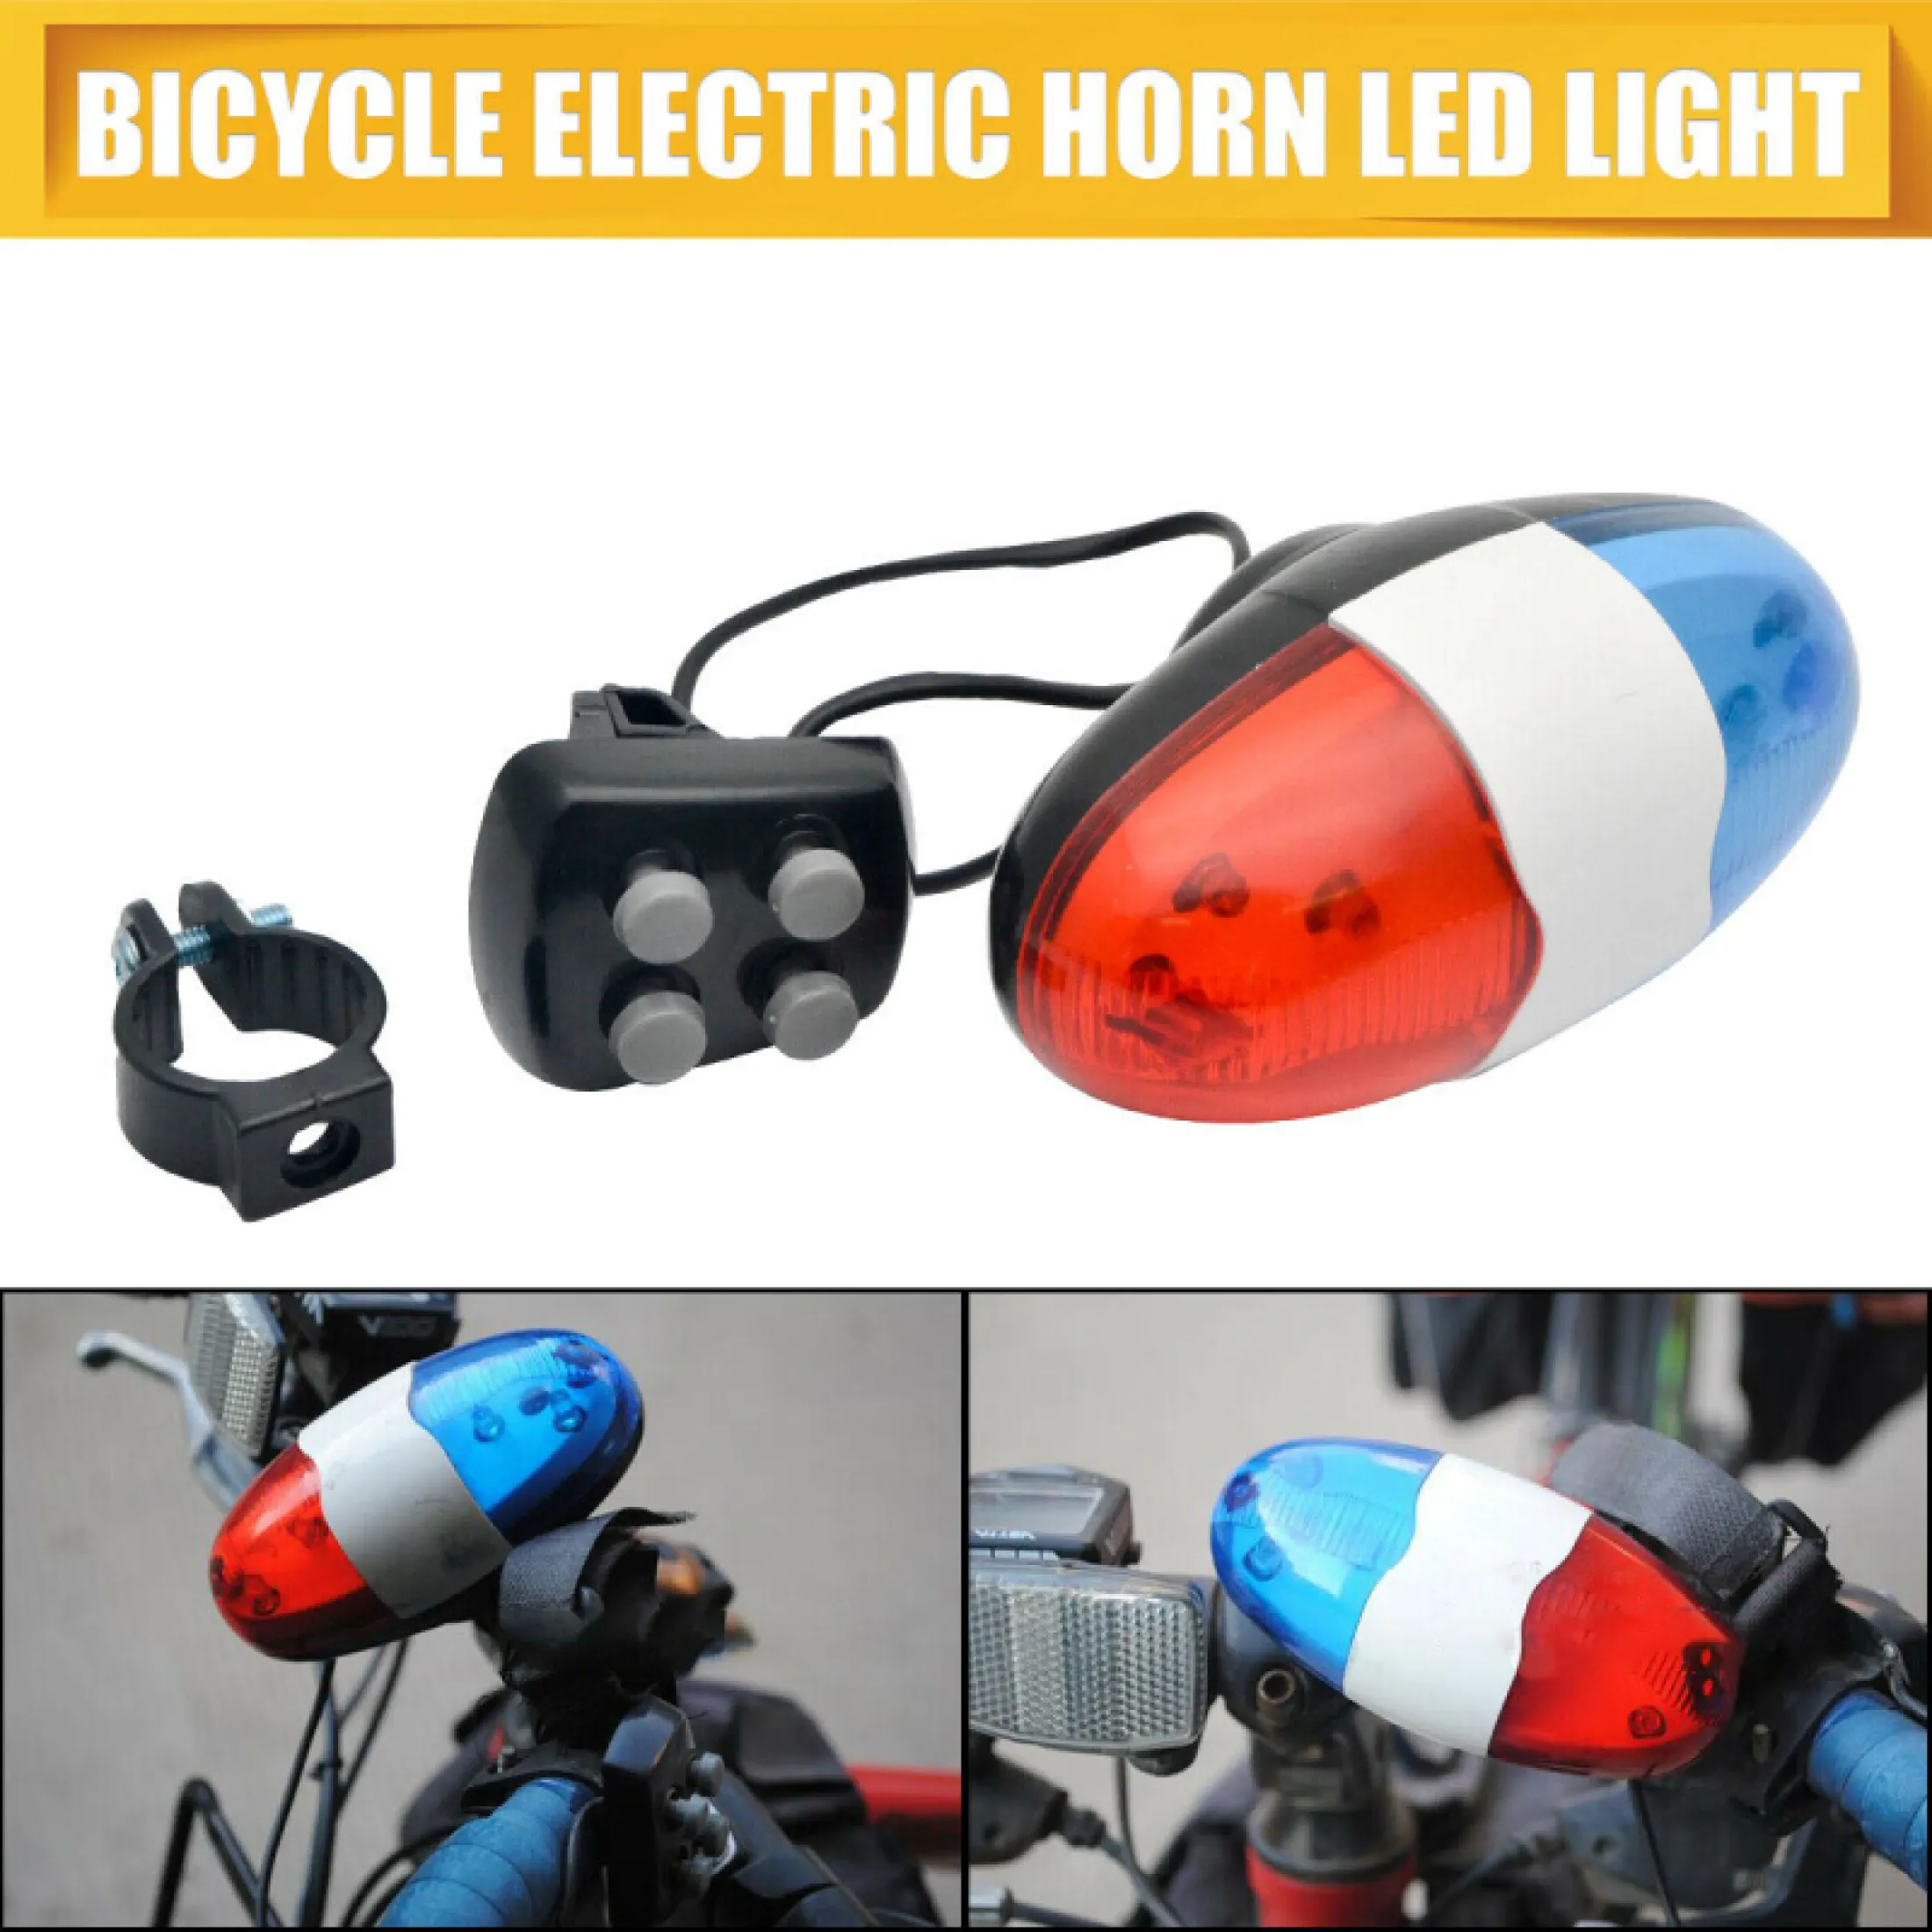 battery bike horn